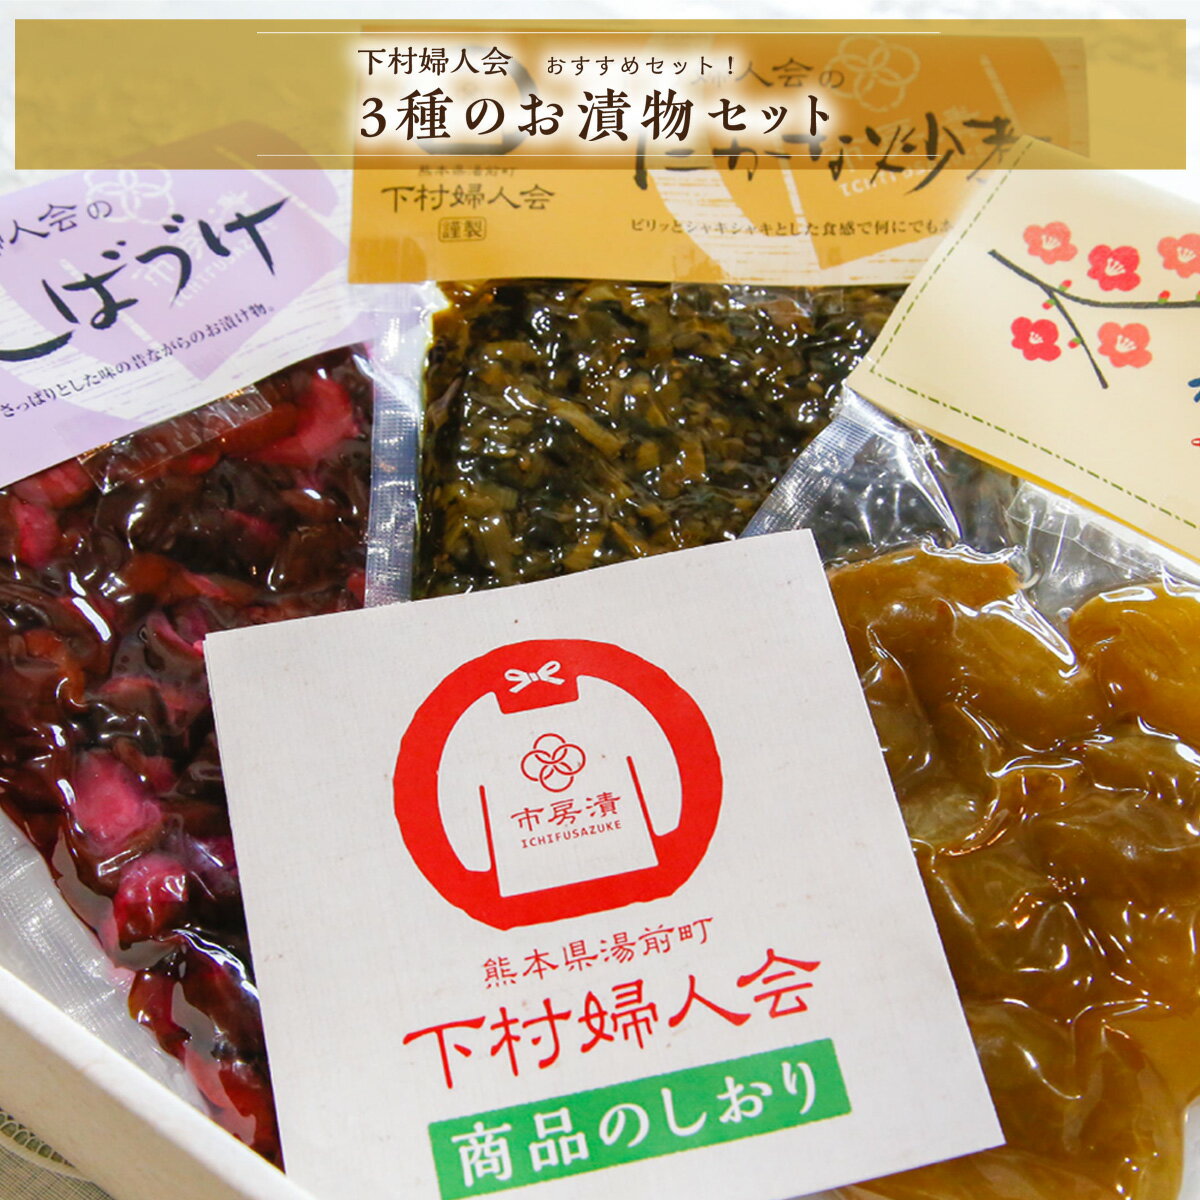 下村婦人会 3種のお漬物セット 送料無料 漬物 高菜 梅 しばづけ 野菜 和食 詰め合わせ セット 熊本